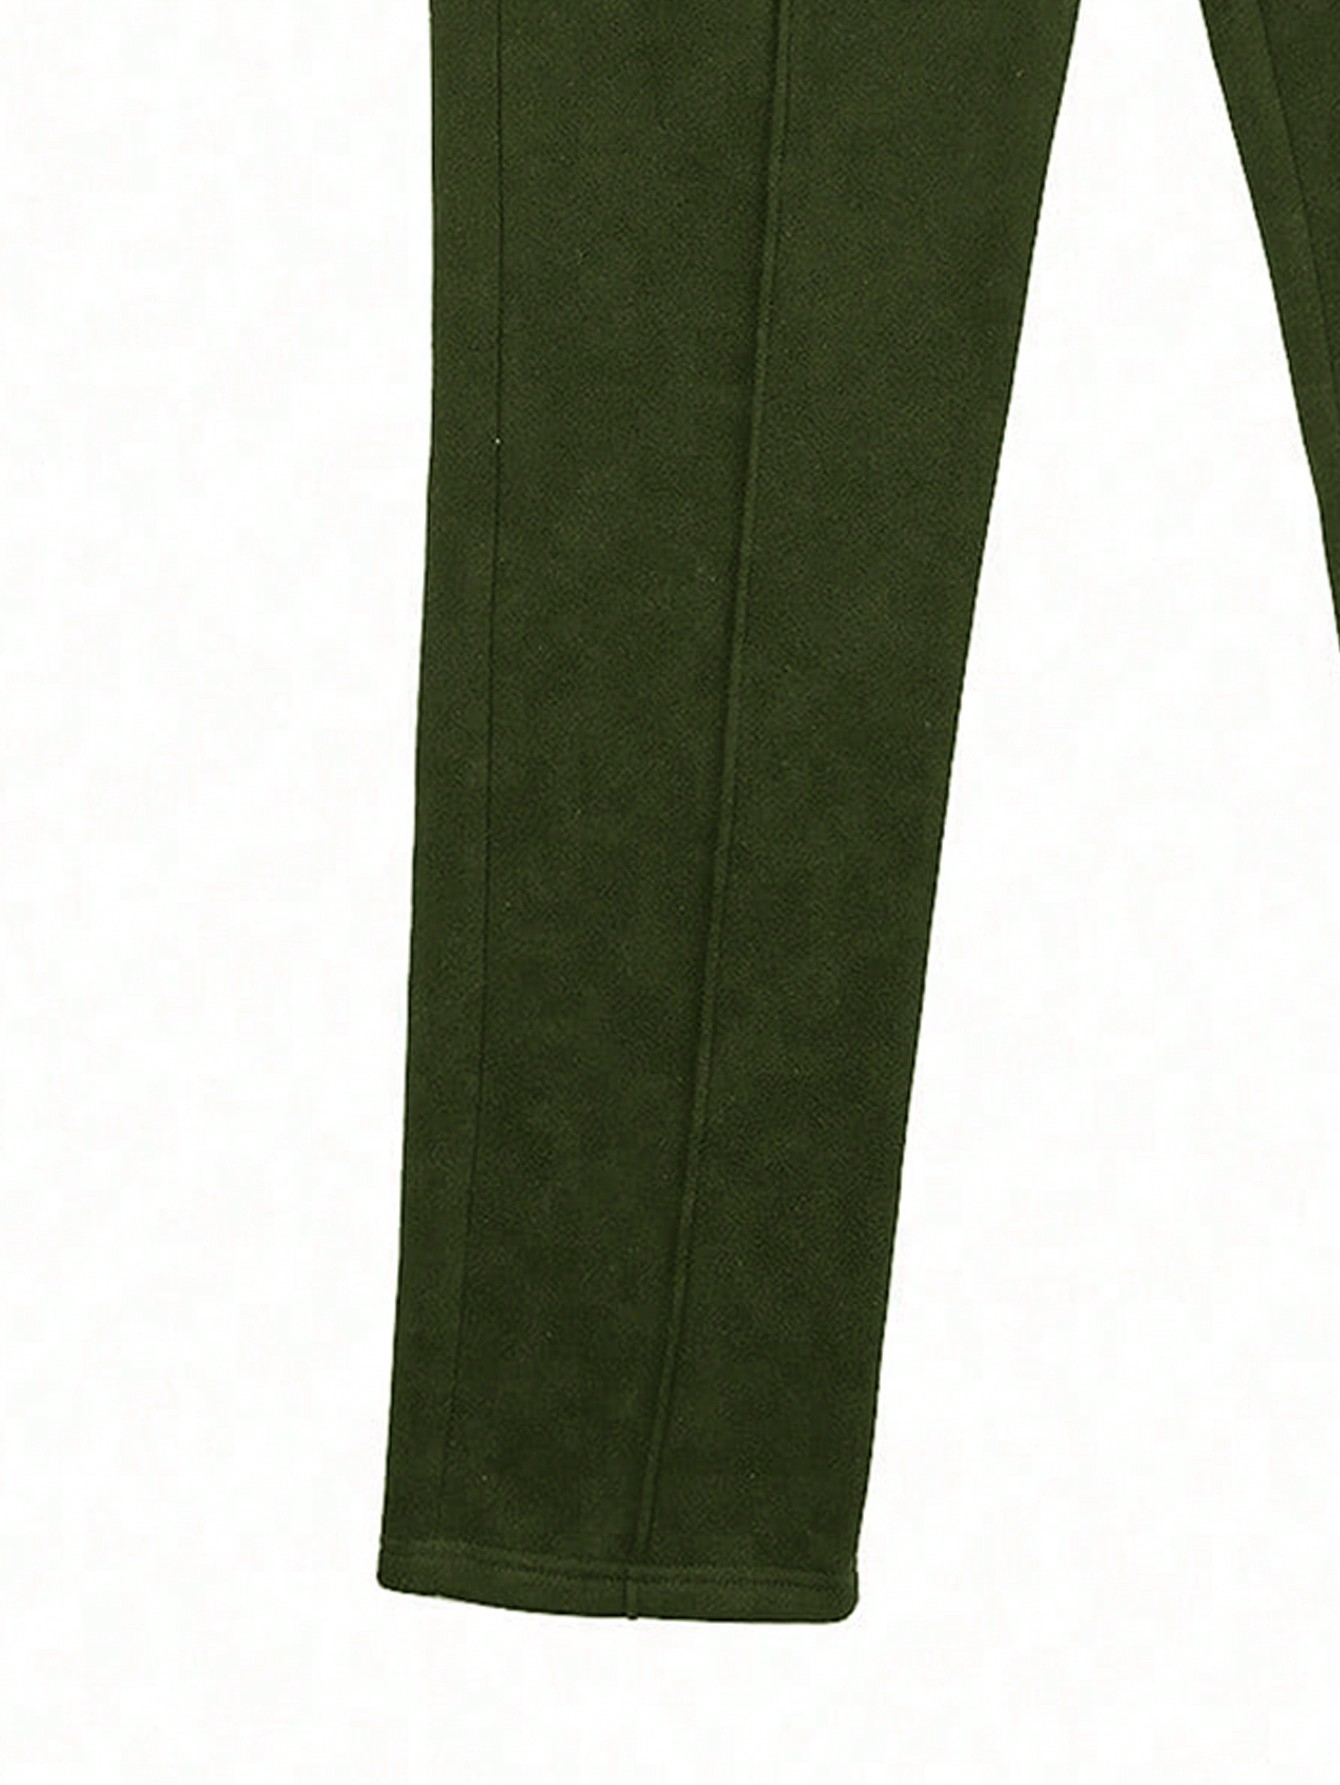 Мужские джоггеры Manfinity EMRG с крестообразным принтом и шнурком на талии, армейский зеленый